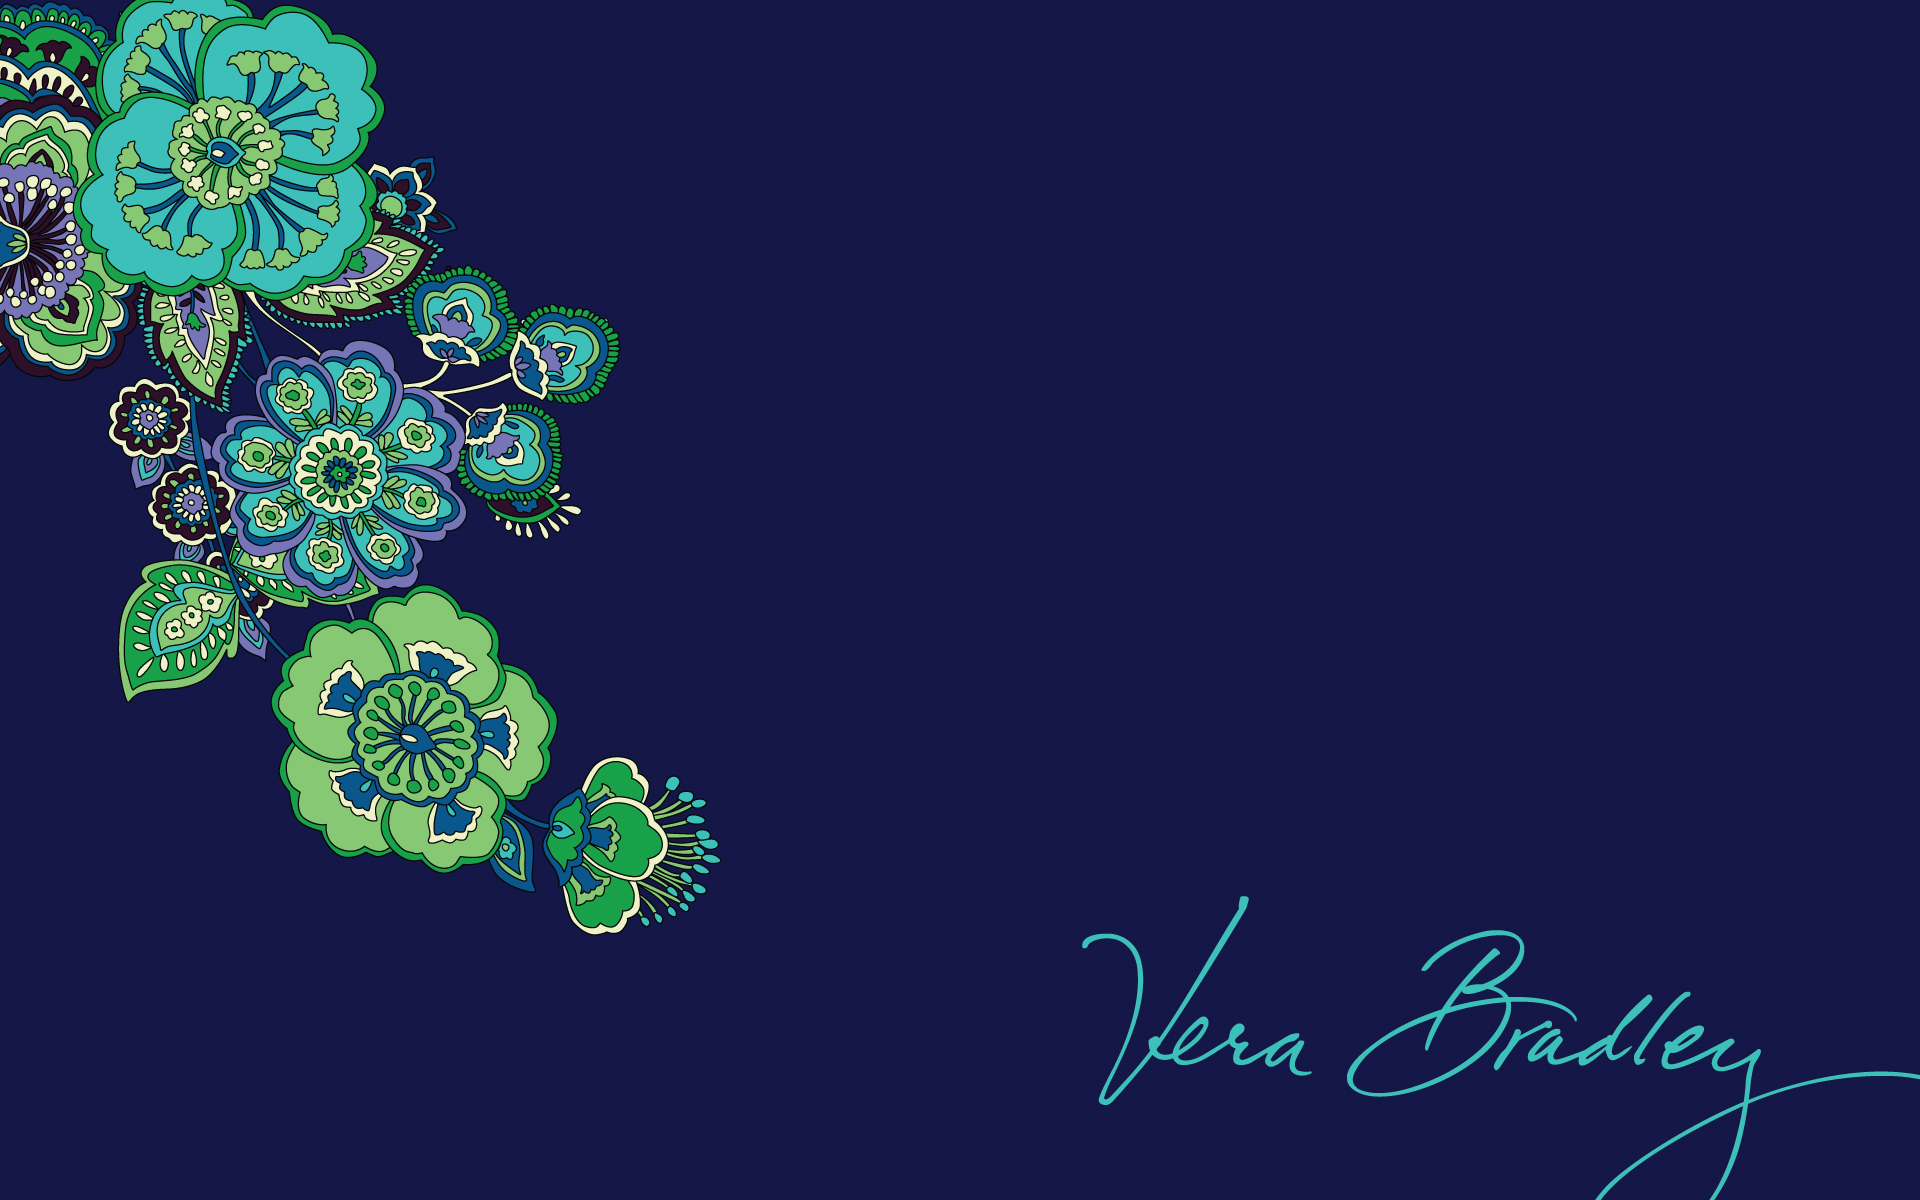 Vera Bradley Backgrounds Blue